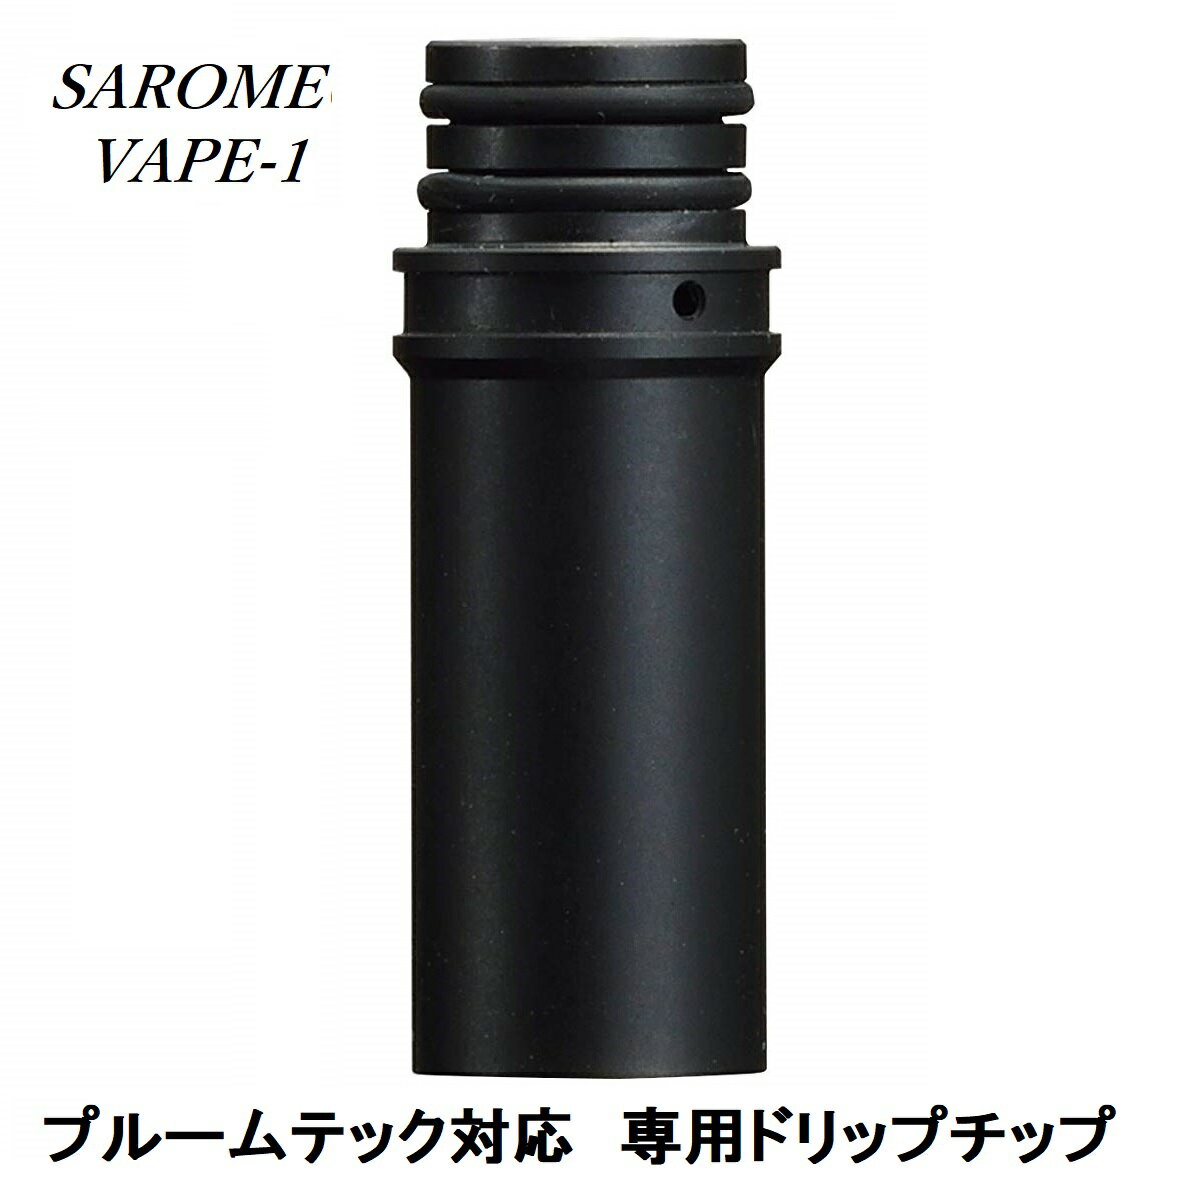 SAROME(サロメ)VAPE-1ブラックドリップチップ液跳ね防止